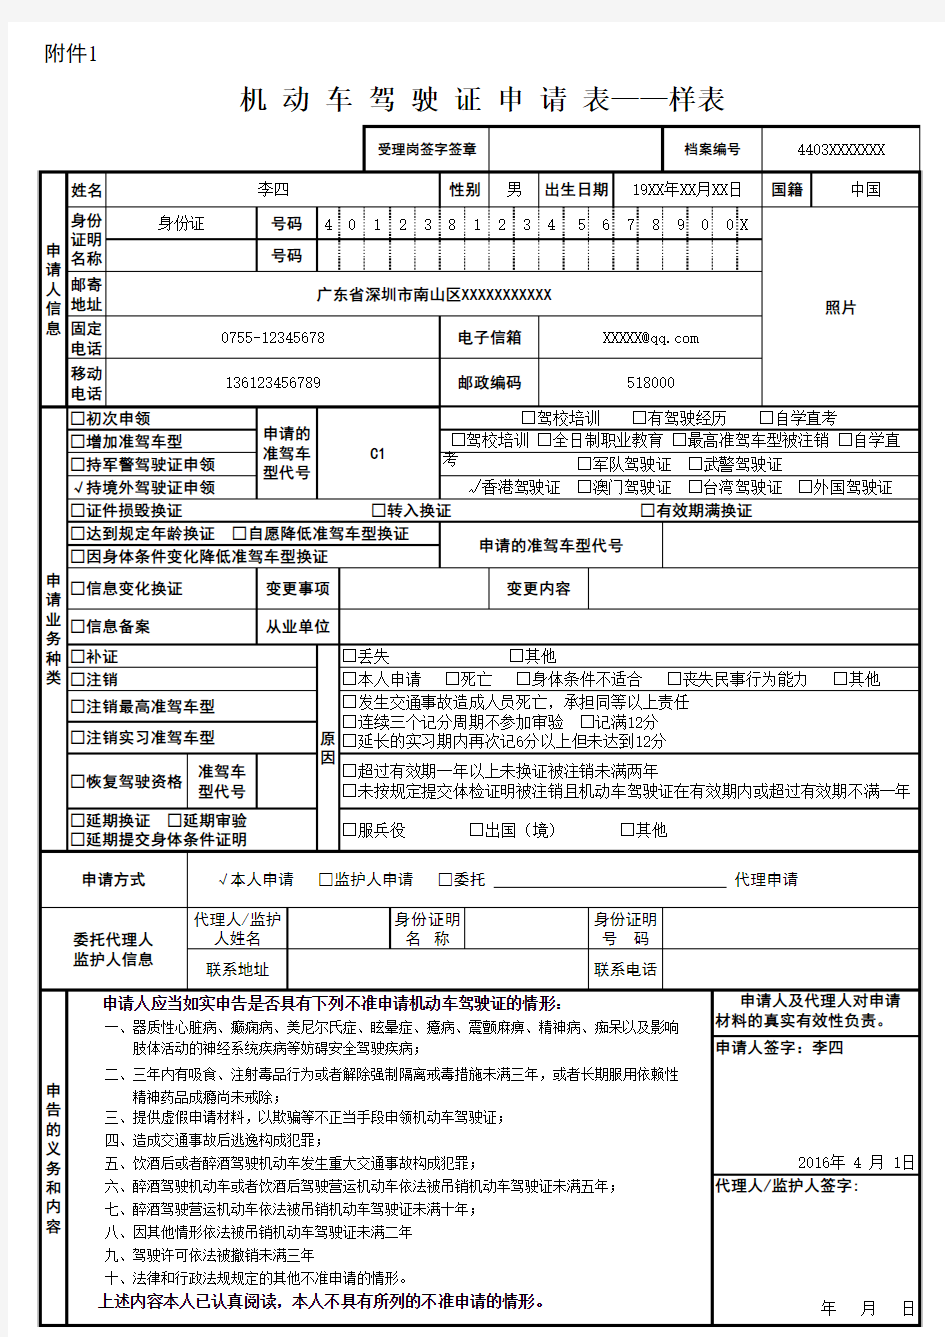 机动车驾驶证申请表(香港人换证)(样表)